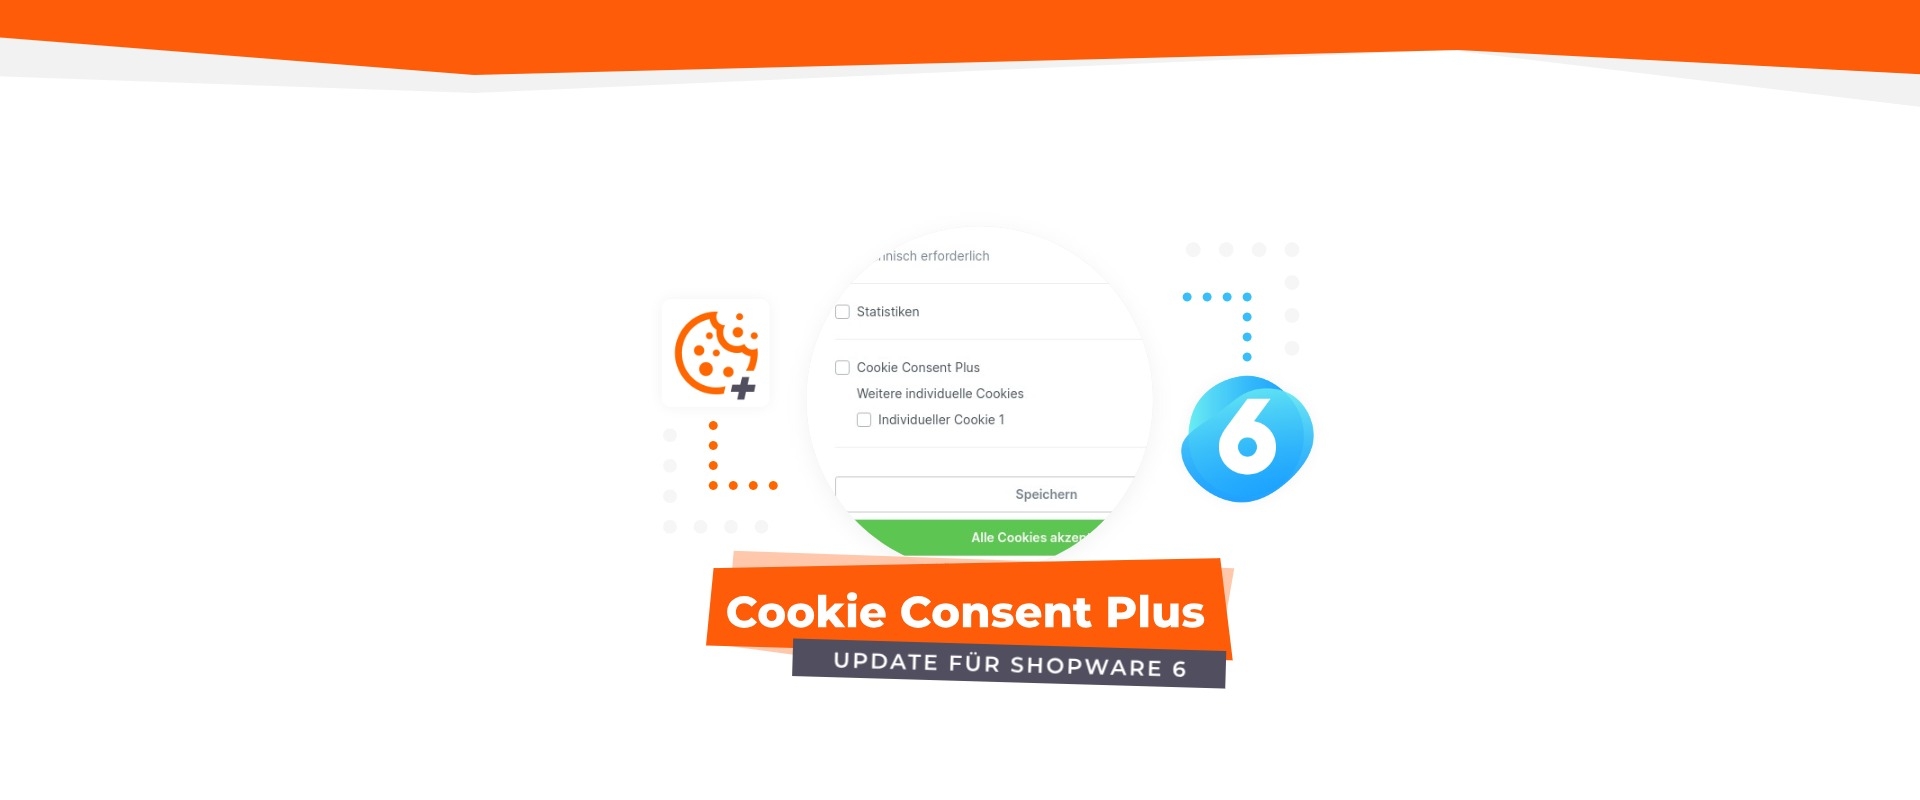 Cookie Consent Plus für Shopware 6: Individuelle / Eigene Cookies & Scripts hinzufügen